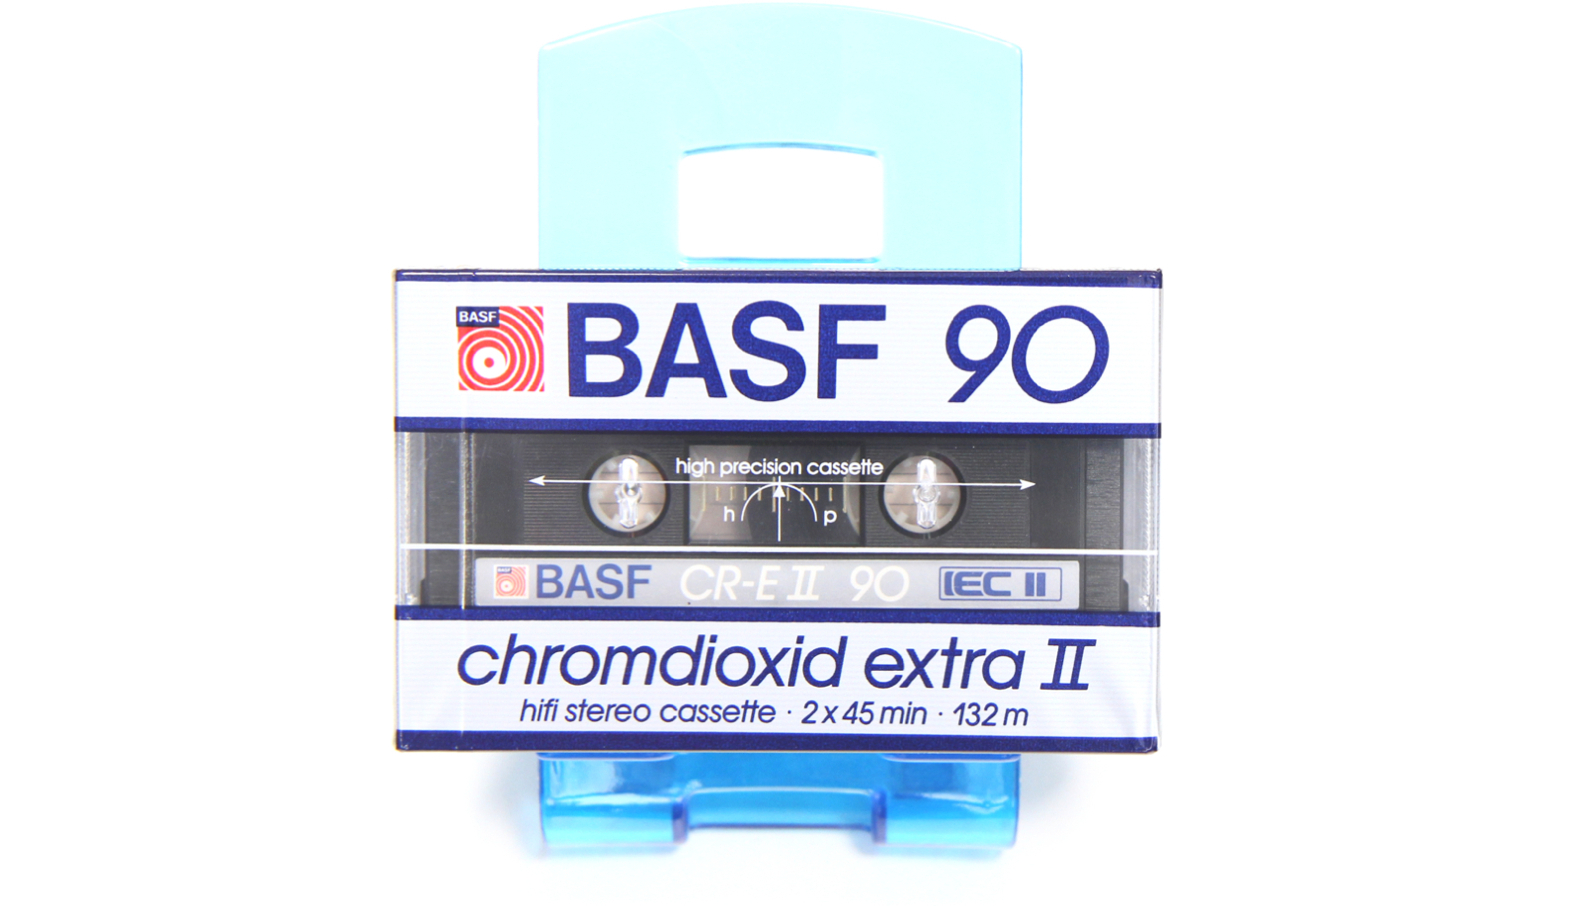 BASF CR-EII90 Chromdioxid Extra II